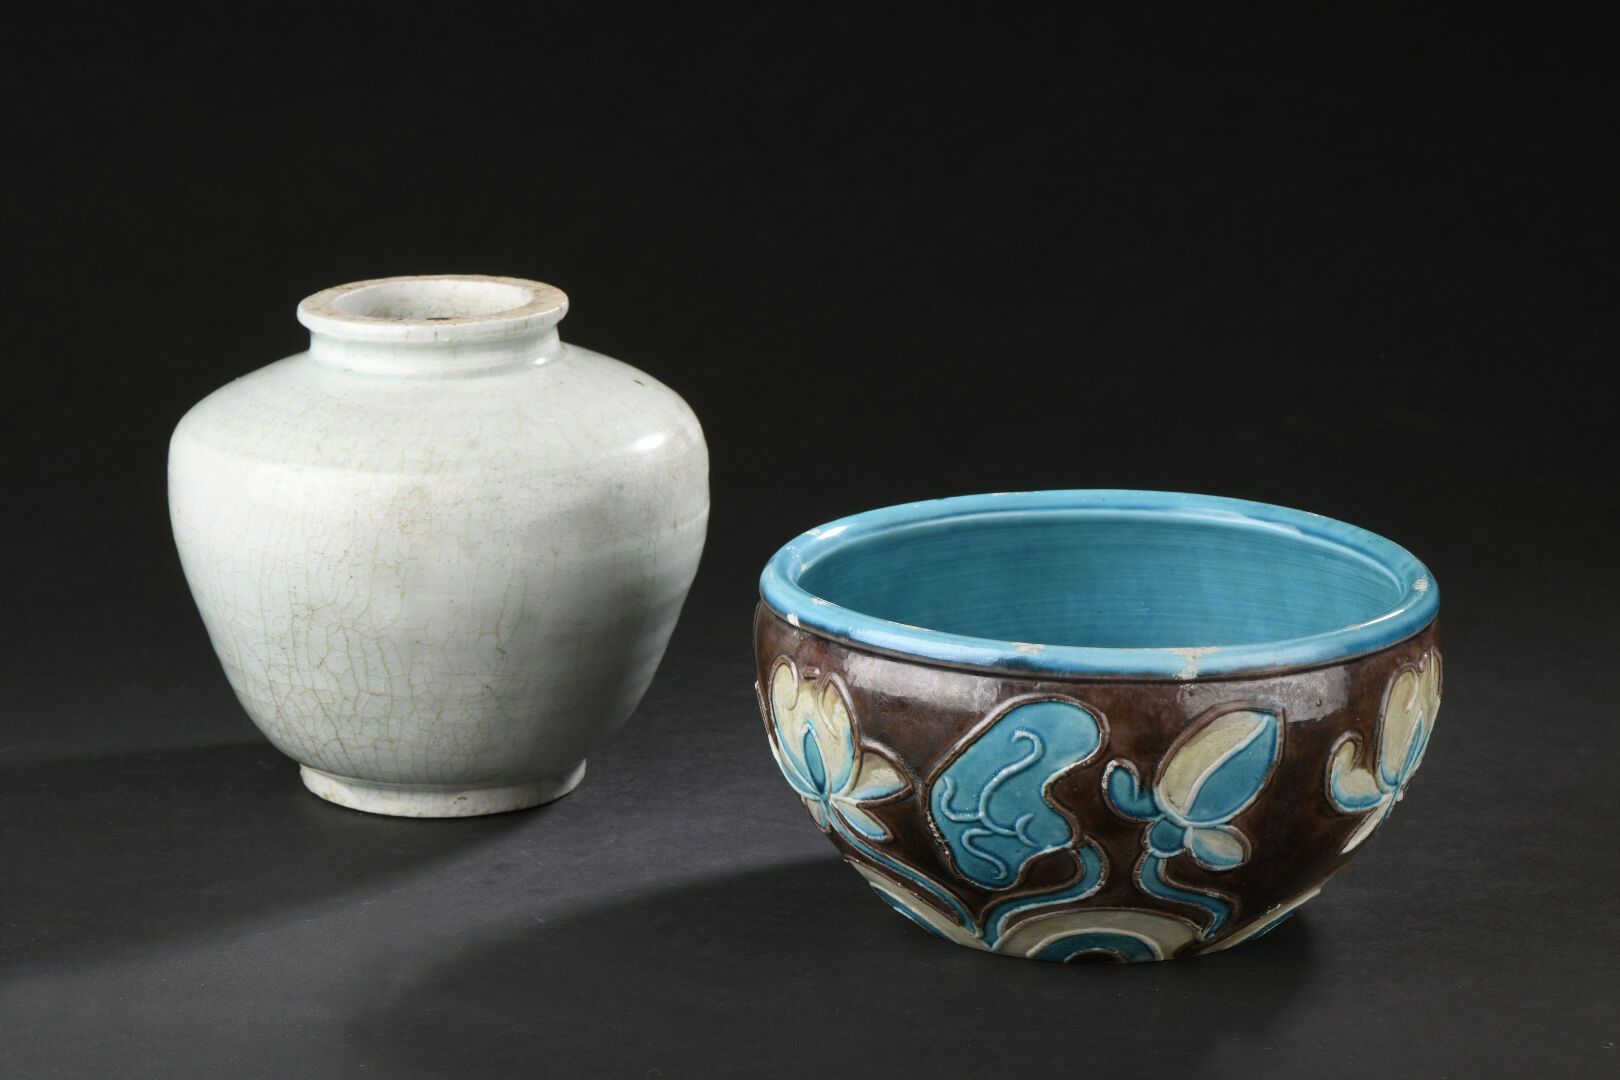 Null 法华风格的青花釉瓷瓶和壶
中国，19世纪和20世纪
花瓶有圆顶，顶部有短颈（裂纹），壶有荷花装饰（珐琅质碎片）。
H.14 D. 18 cm